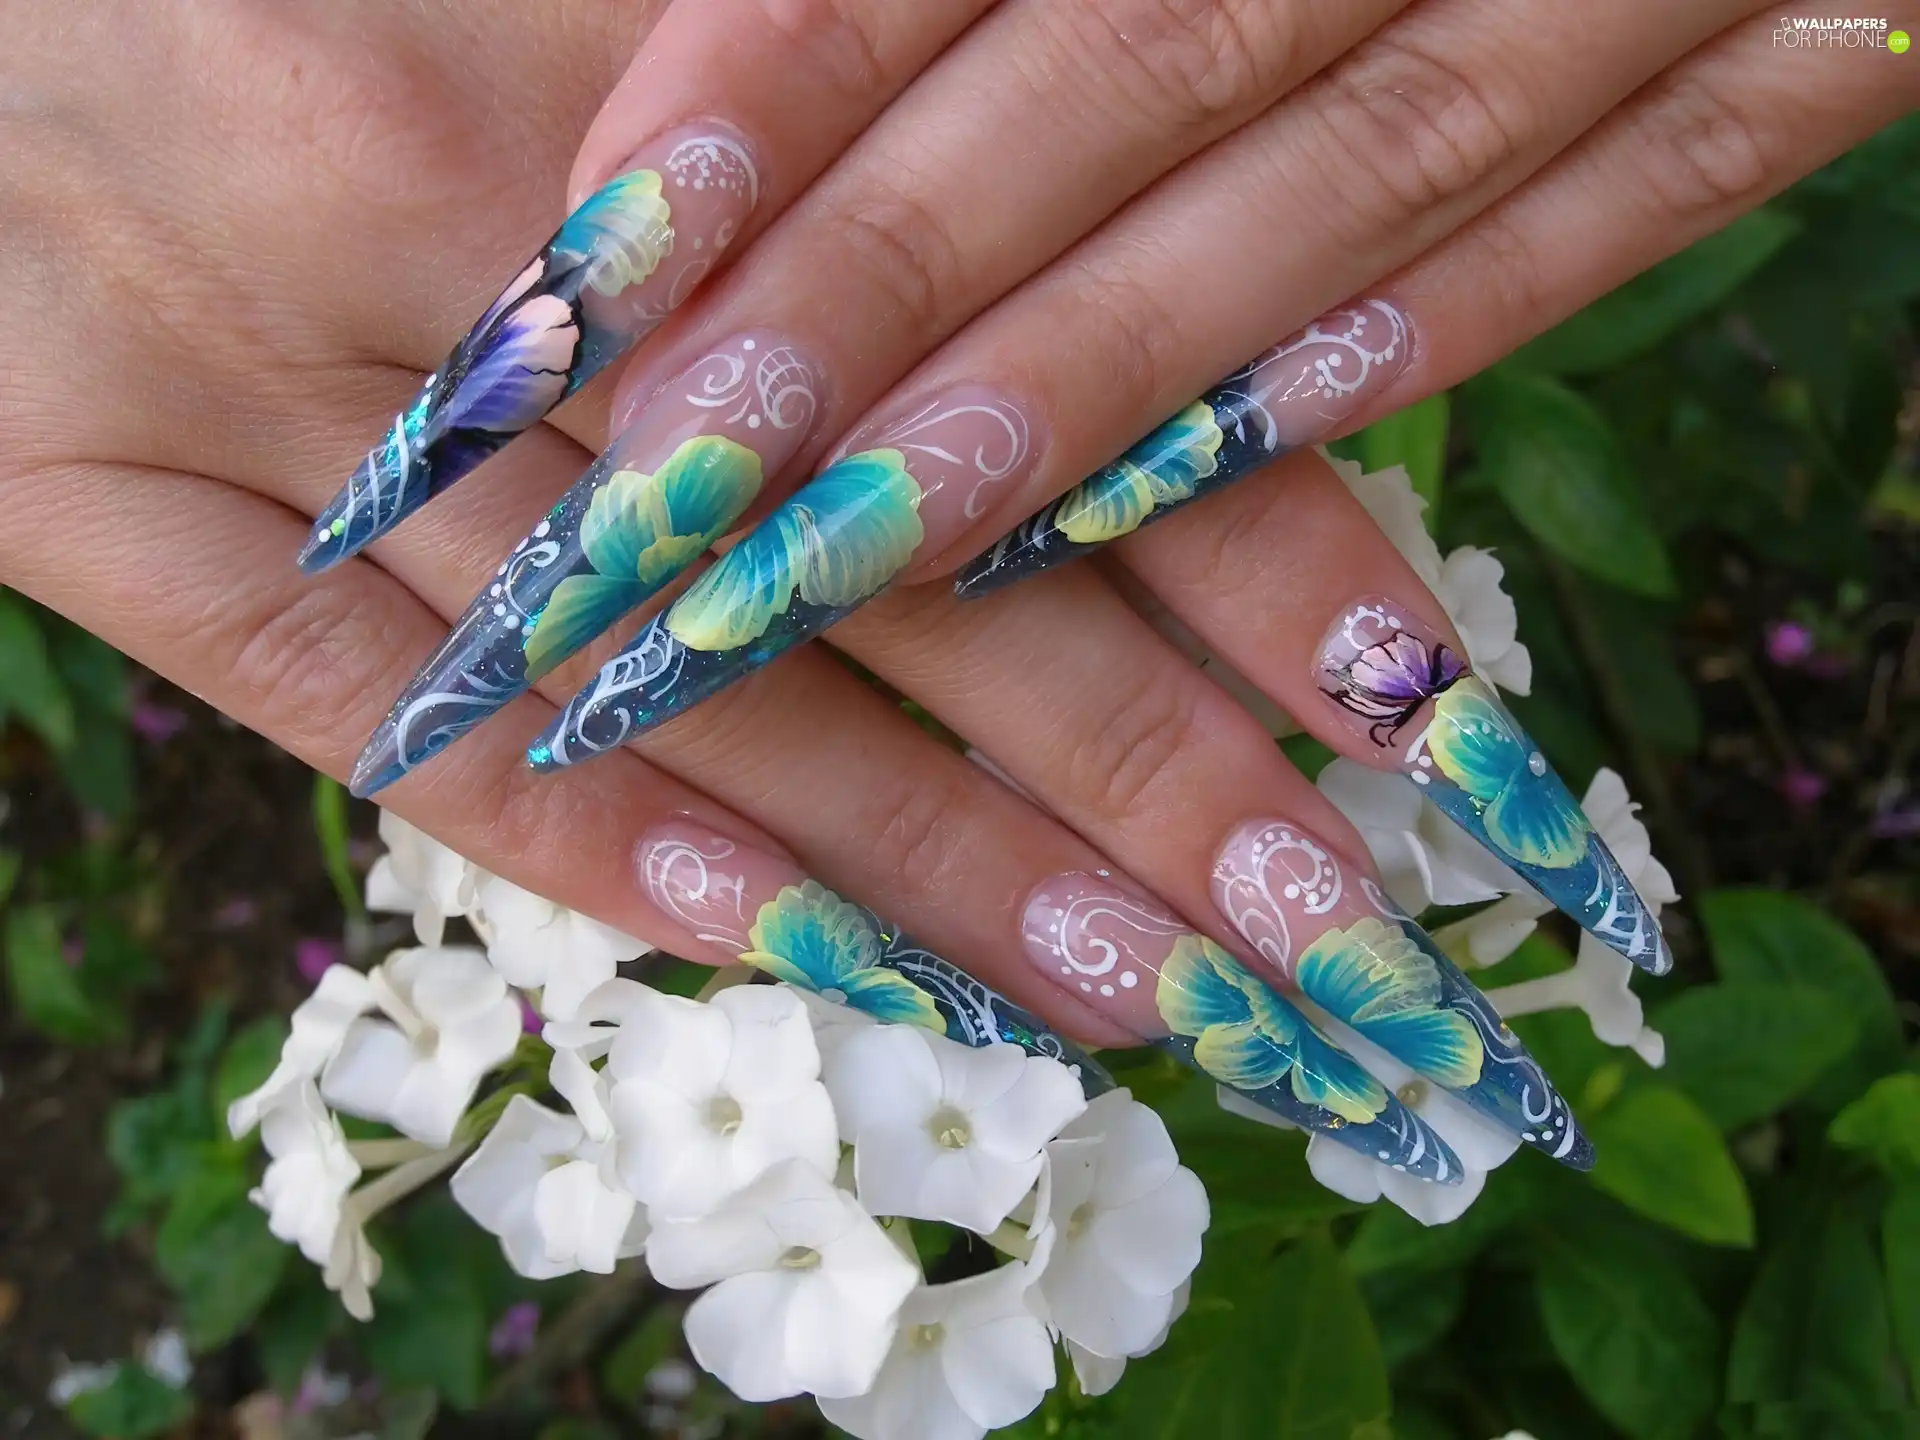 Nails, Flowers, hands, color, Women